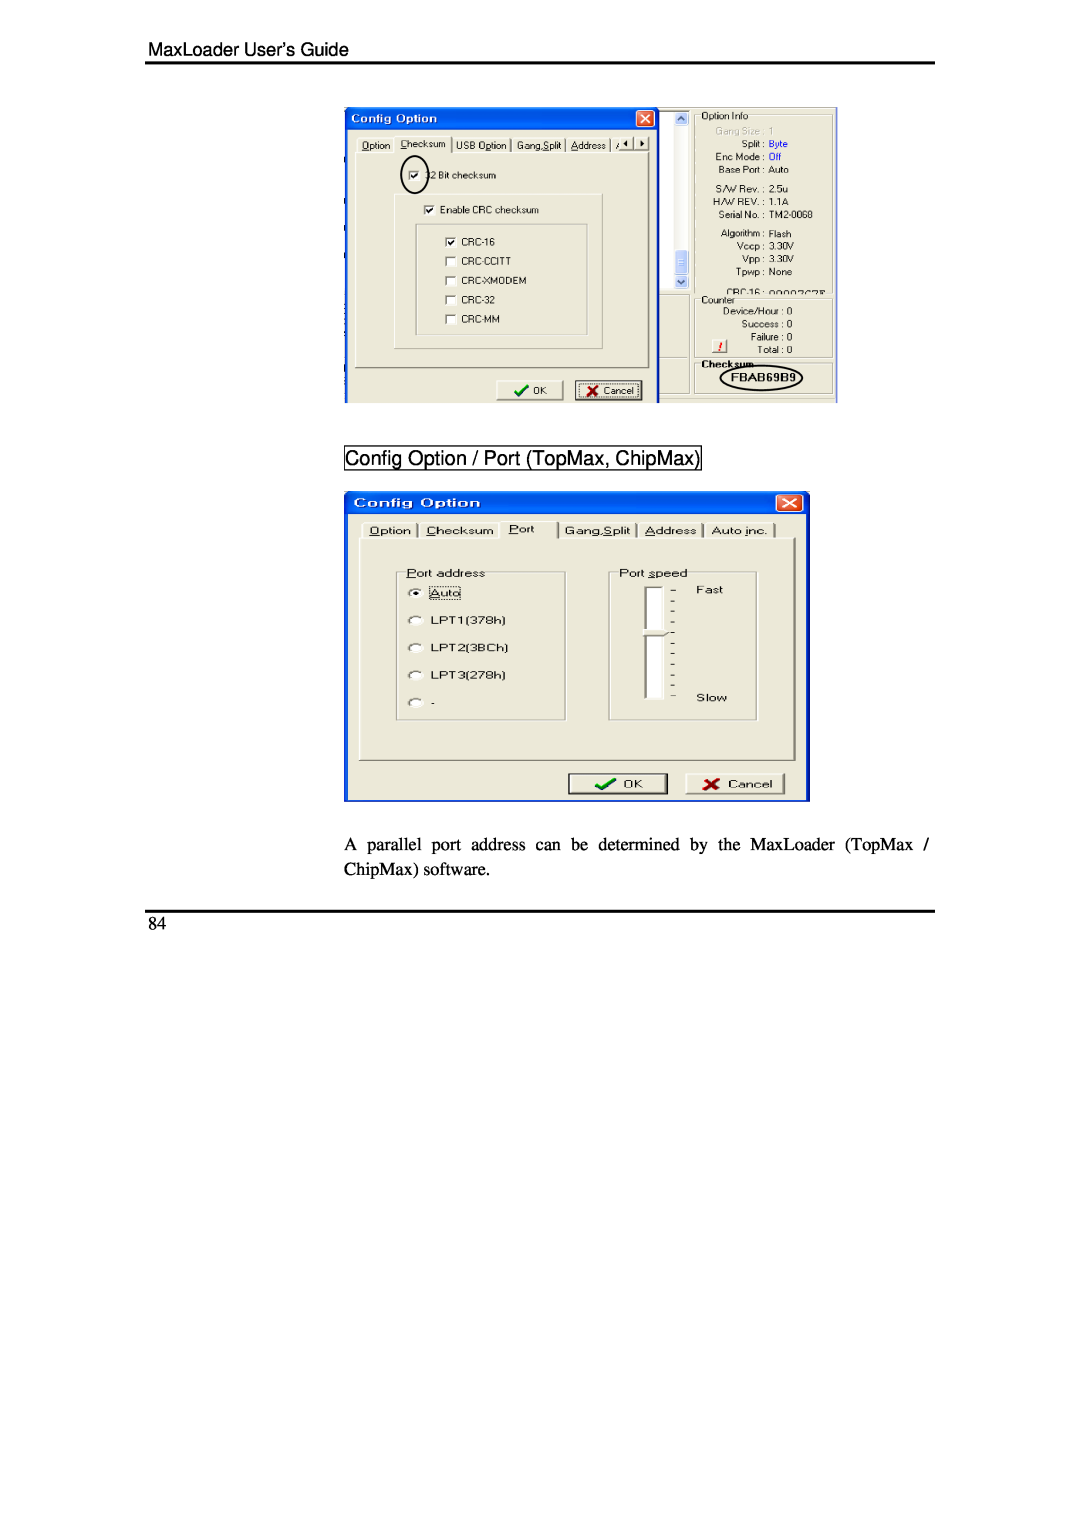 IBM manual Config Option / Port TopMax, ChipMax, MaxLoader User’s Guide, ChipMax software 